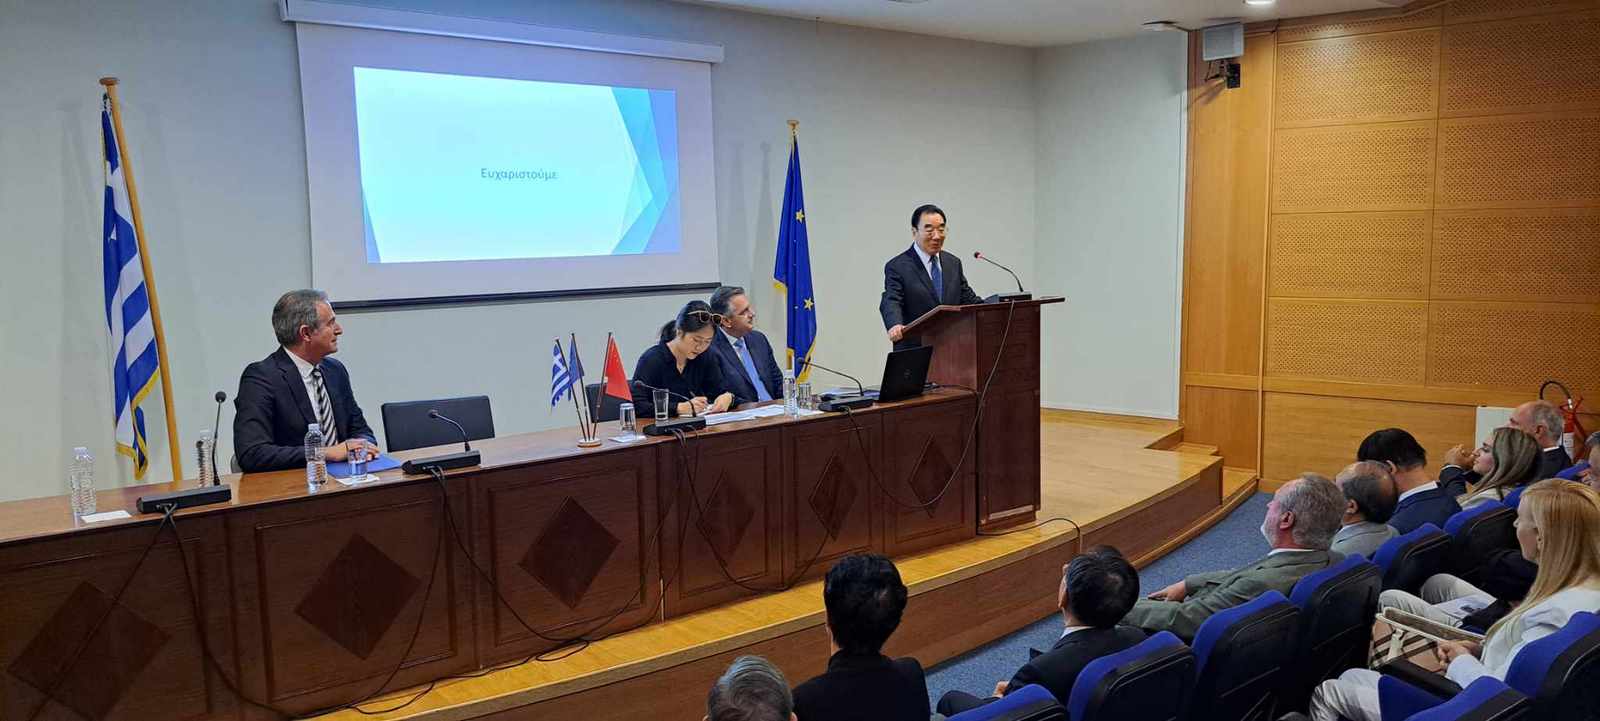 Συνάντηση του Περιφερειάρχη Δυτικής Μακεδονίας Γιώργου Κασαπίδη, με τον Πρέσβη της Λαϊκής Δημοκρατίας της Κίνας, Xiao Junzheng